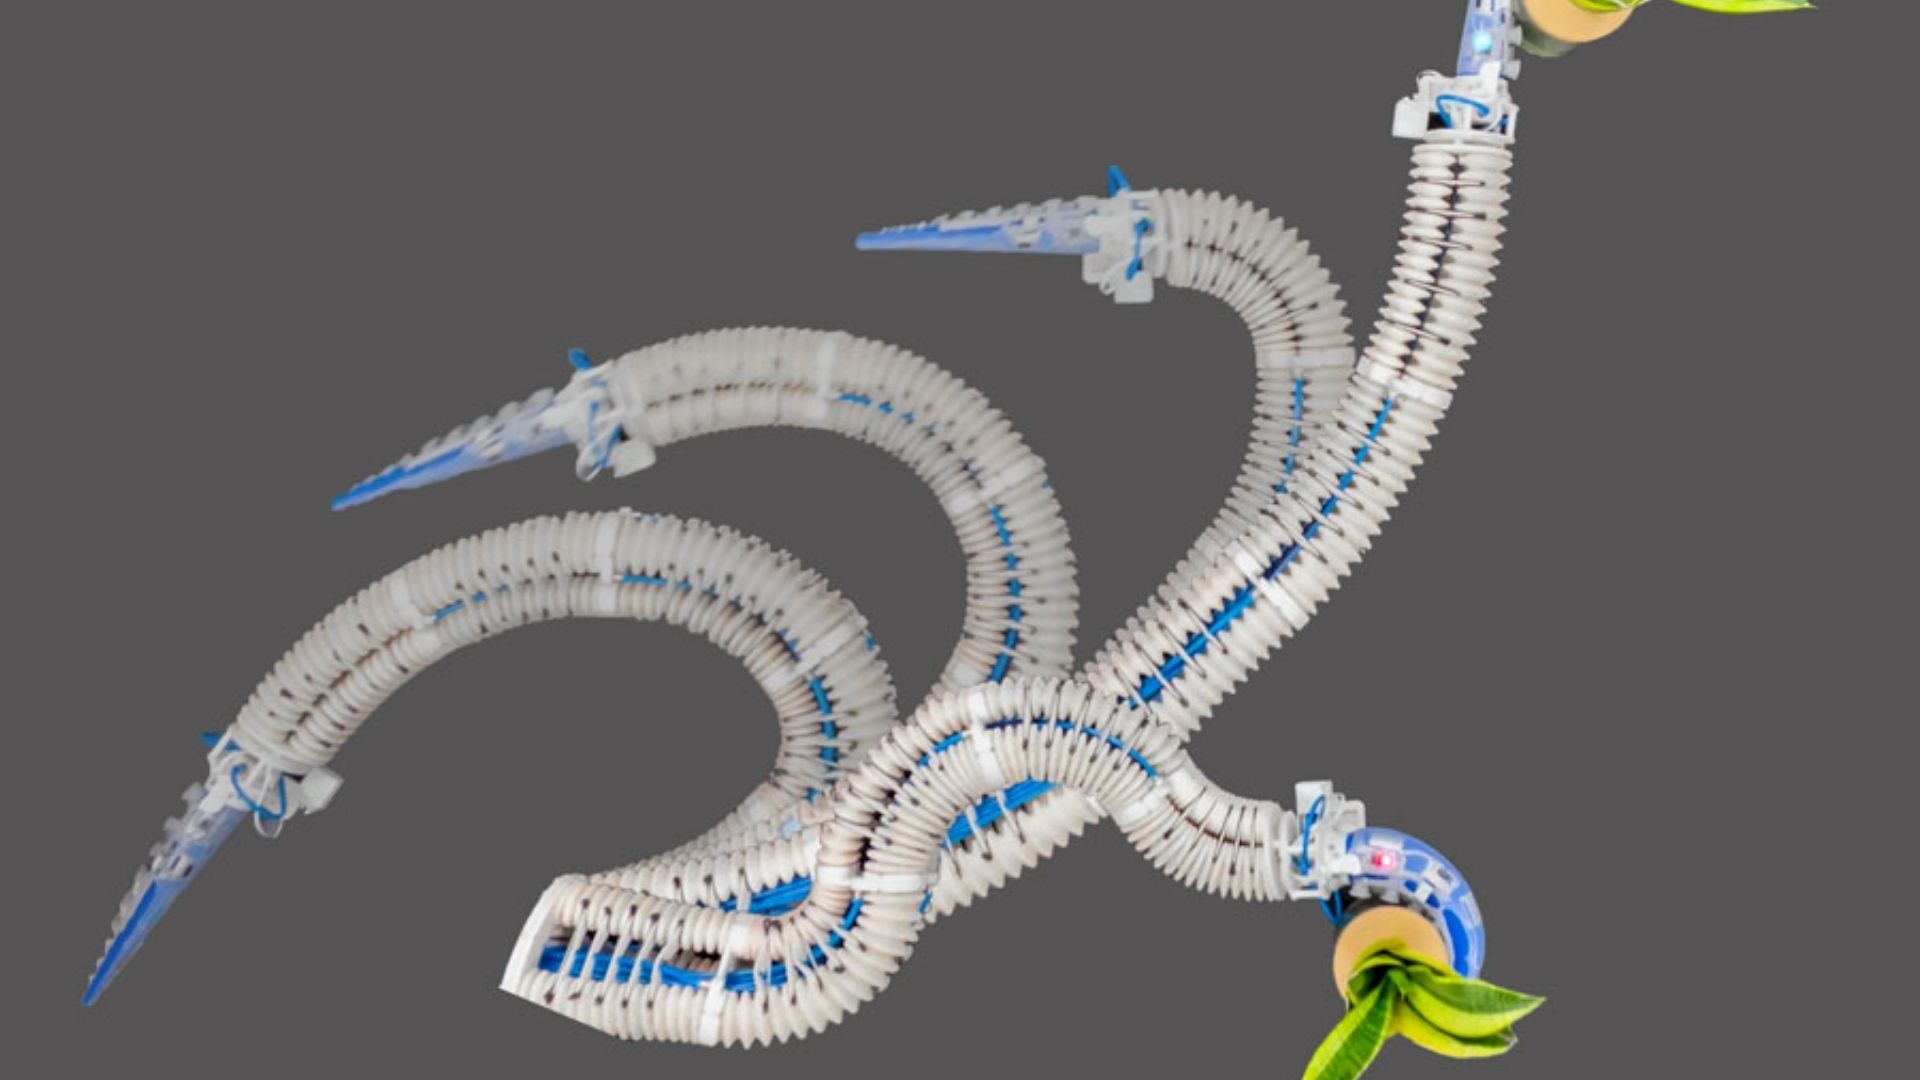 Crean brazo robótico inspirado en tentáculos de pulpo